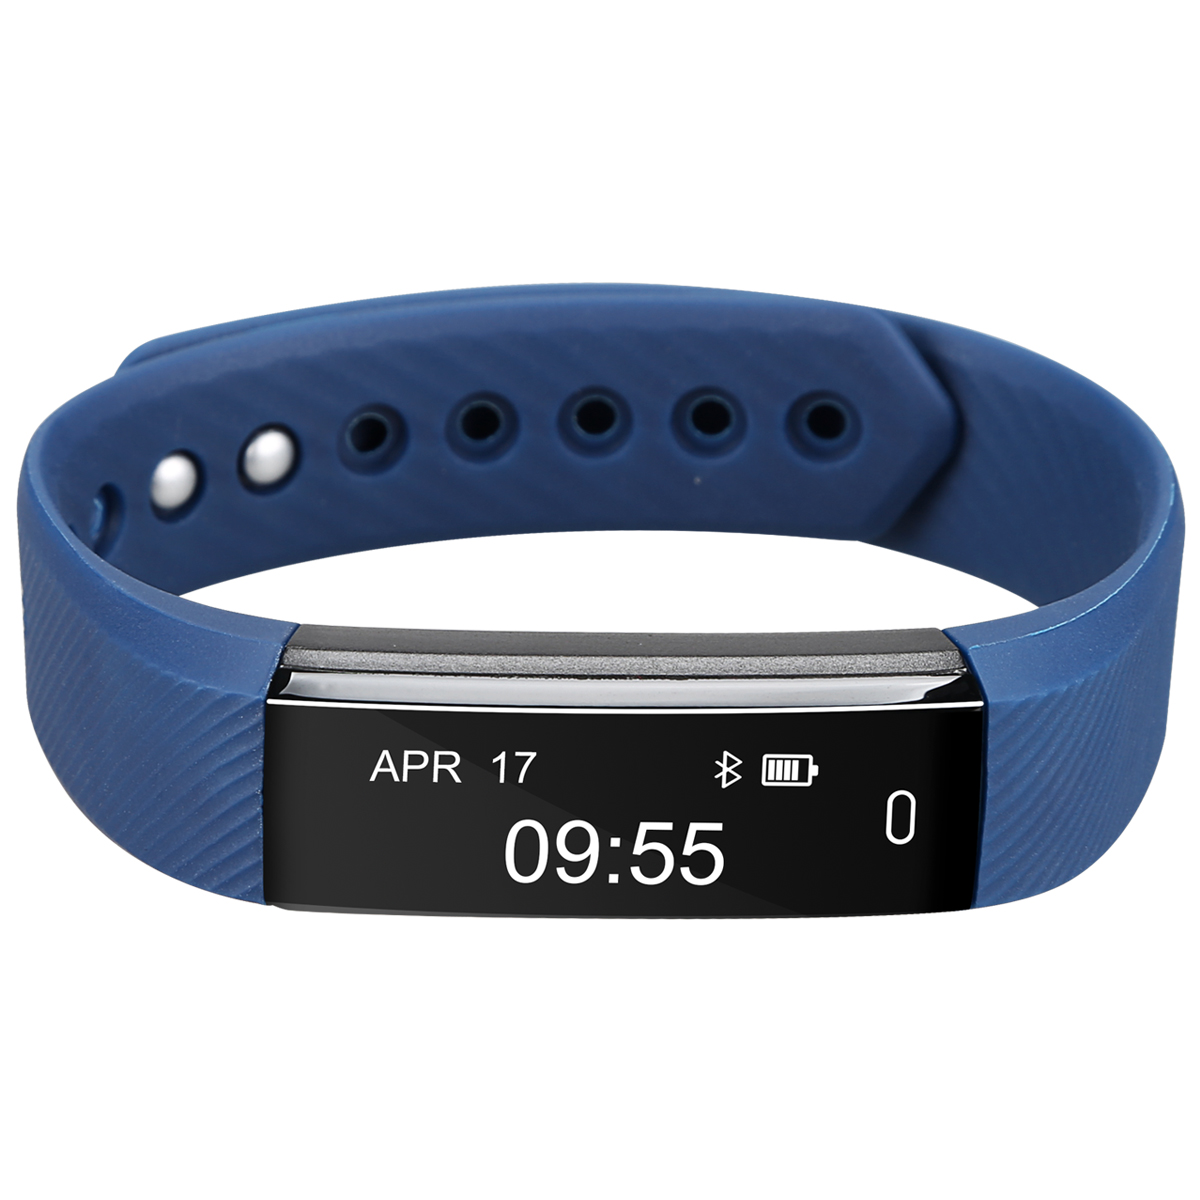 Bluetooth Sport Smart Watch mit Herzfrequenz Monitor Fitness Tracker Watch Activity Tracker Armband 4.4 Aktivität Tracking Kalorien Gesundheit Alarm Fernbedienung und Kamera Fernbedienung für Android und iOS Smartphones